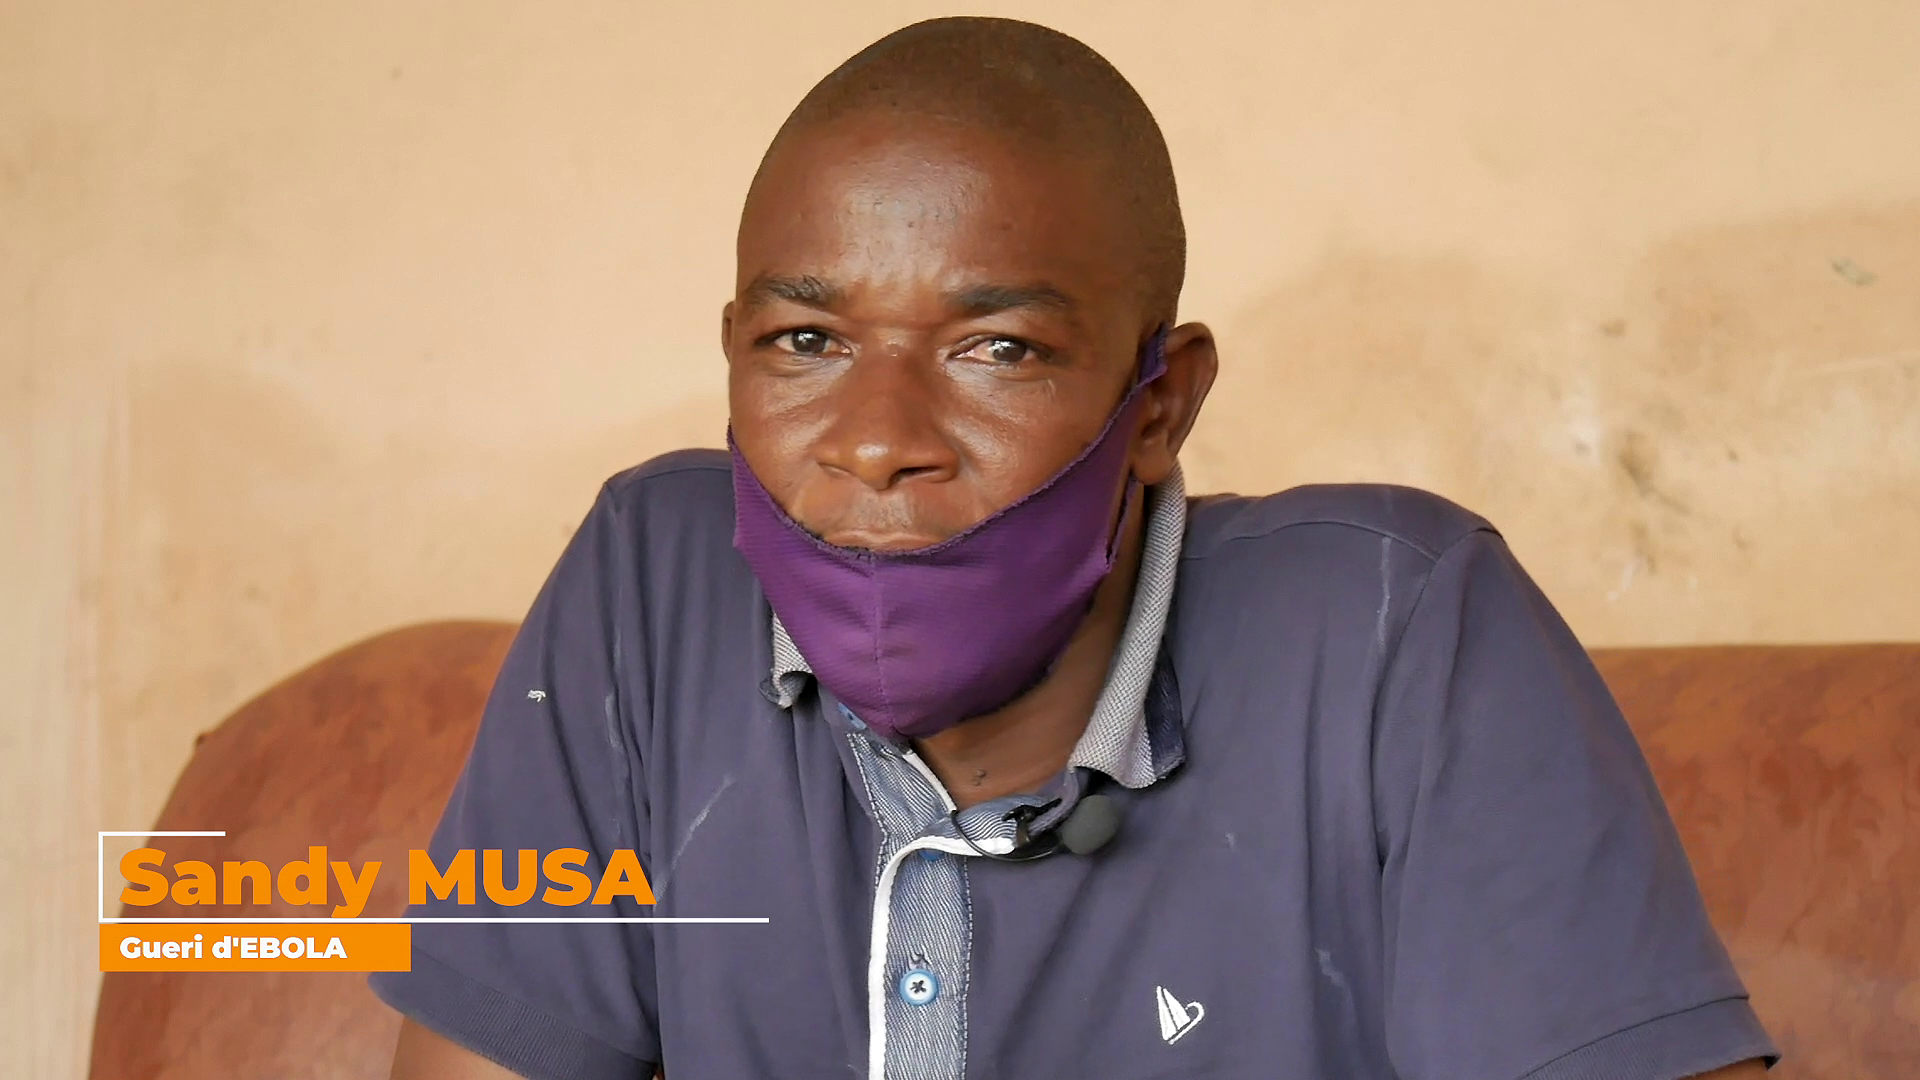 Sandy Musa Guéri d’Ebola s’engage pour la continuité des services de santé maternelle